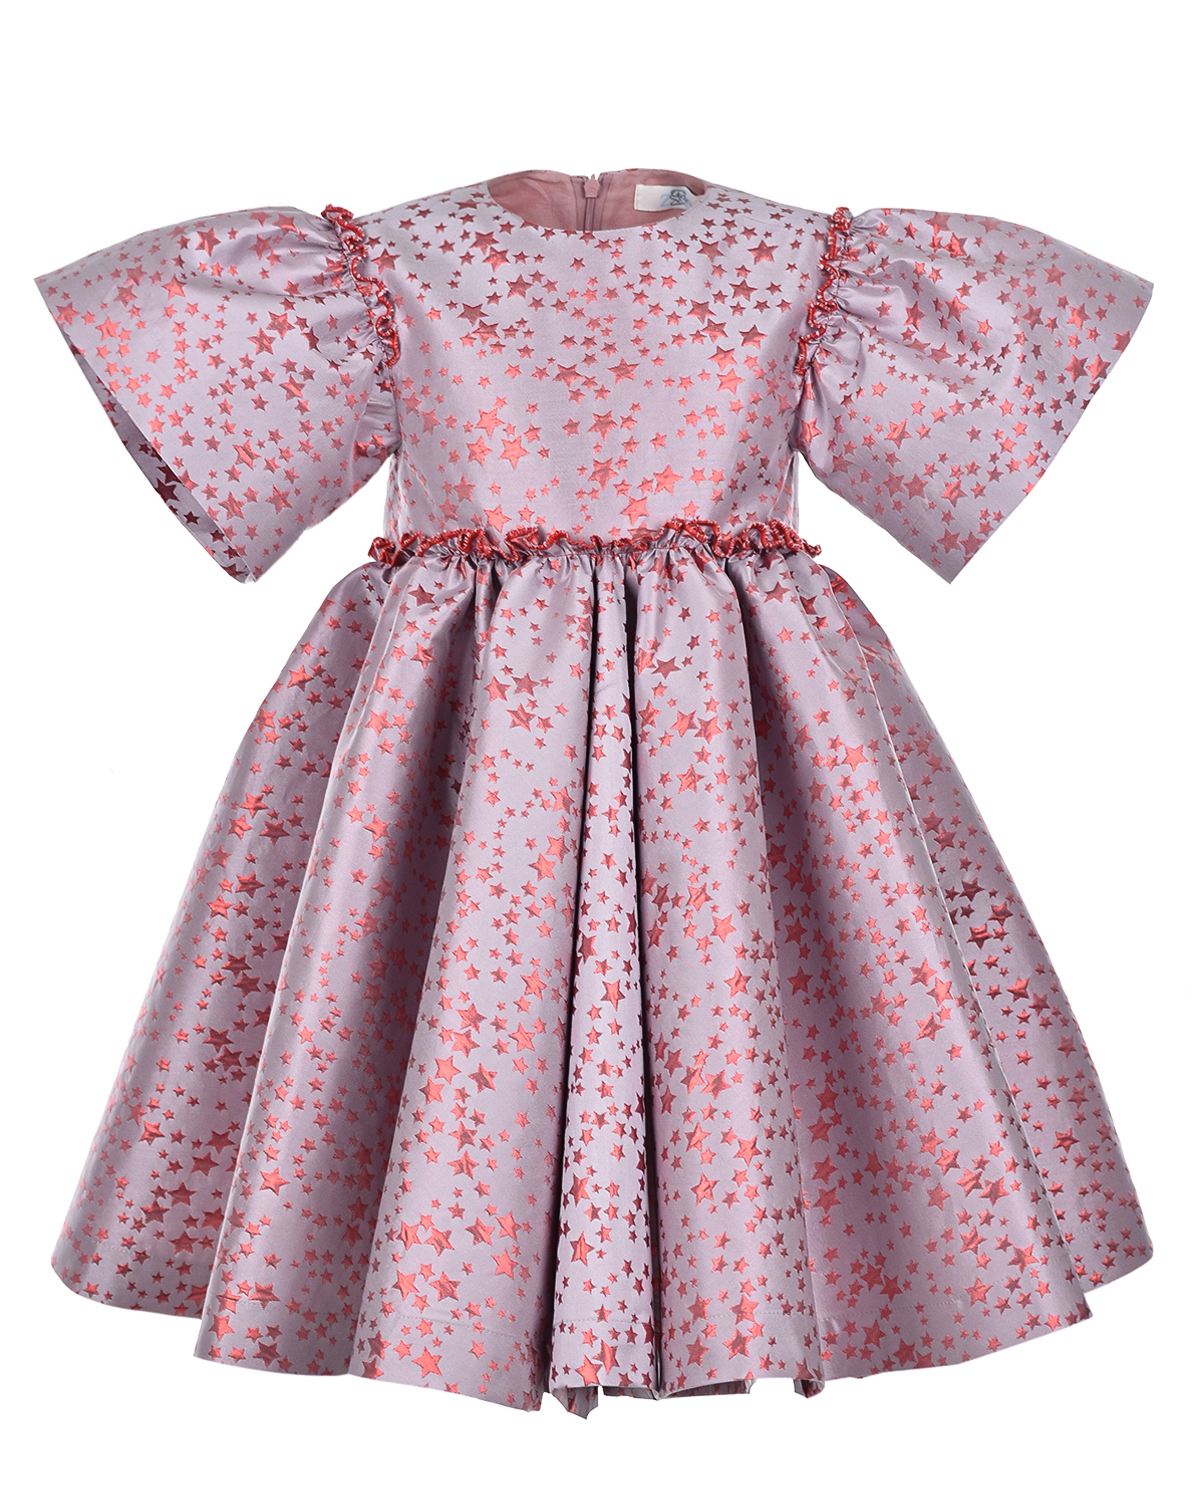 Жаккардовое платье с декором в форме звездочек Zhanna&Anna, размер 104, цвет розовый - фото 1